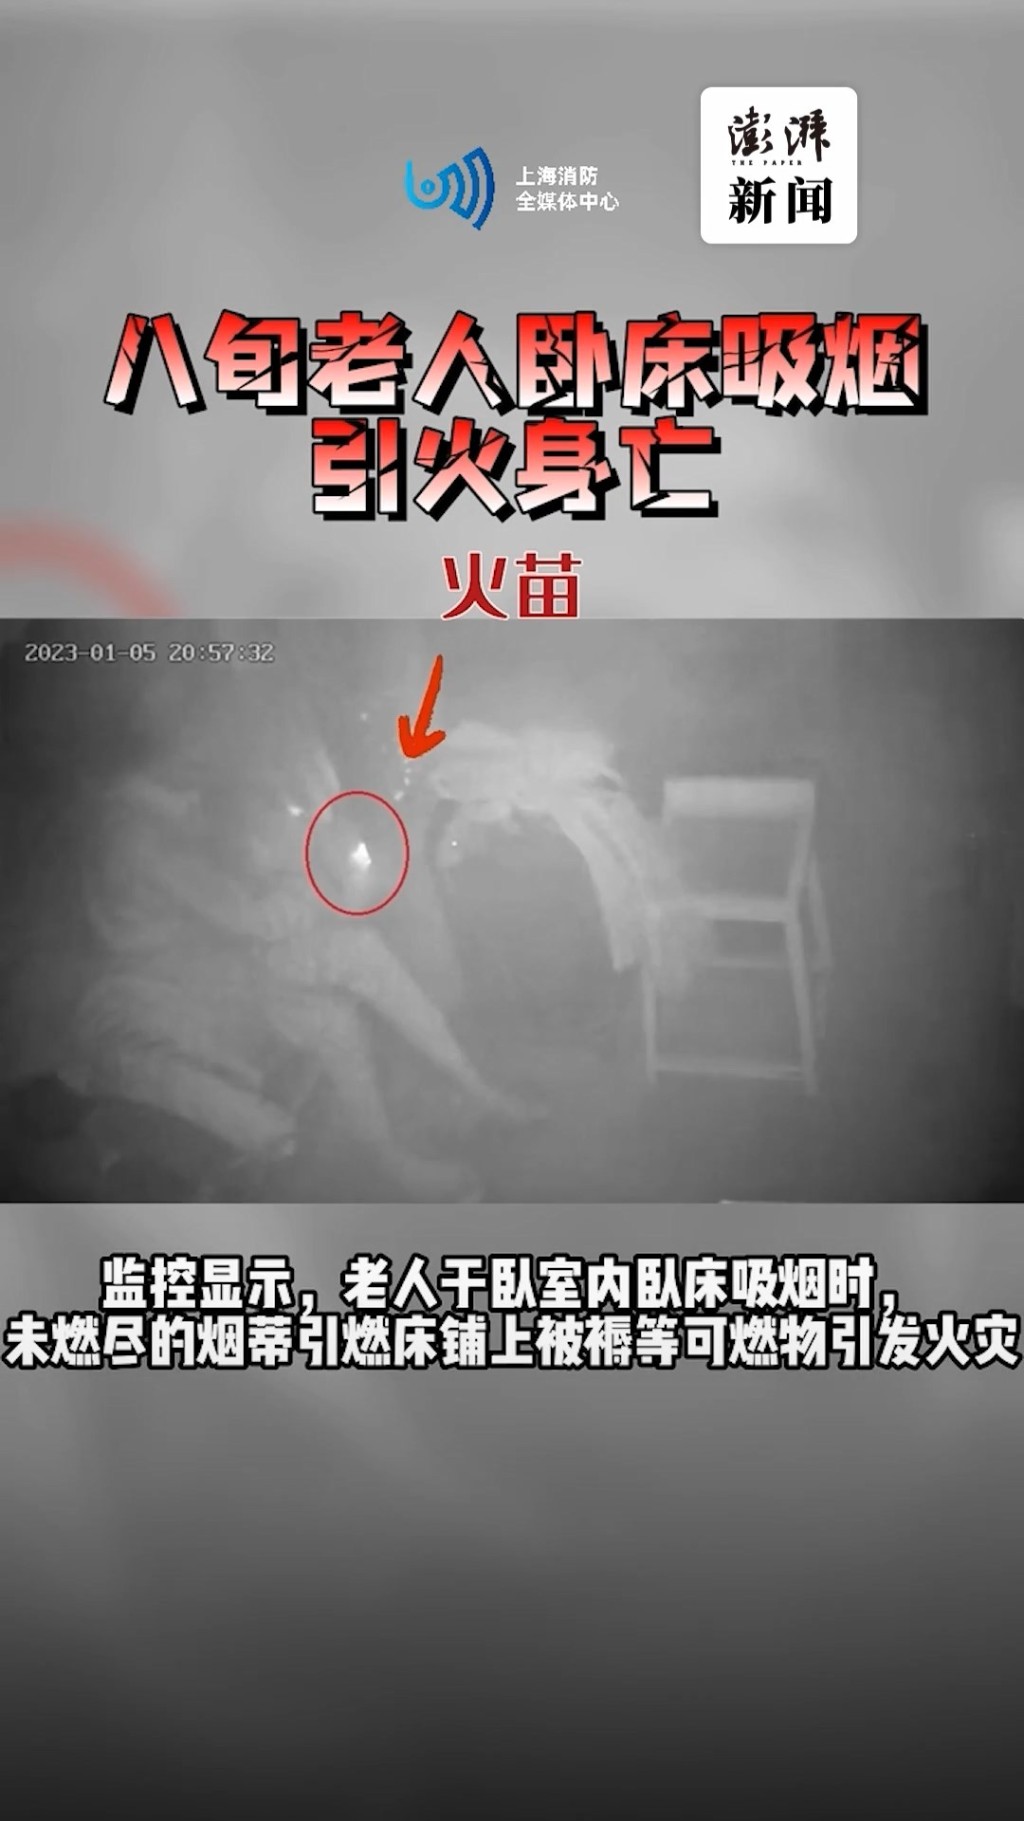 上海崇明一名八旬翁卧床吸烟时，未燃尽的烟蒂跌落床铺上的被褥引起火警。